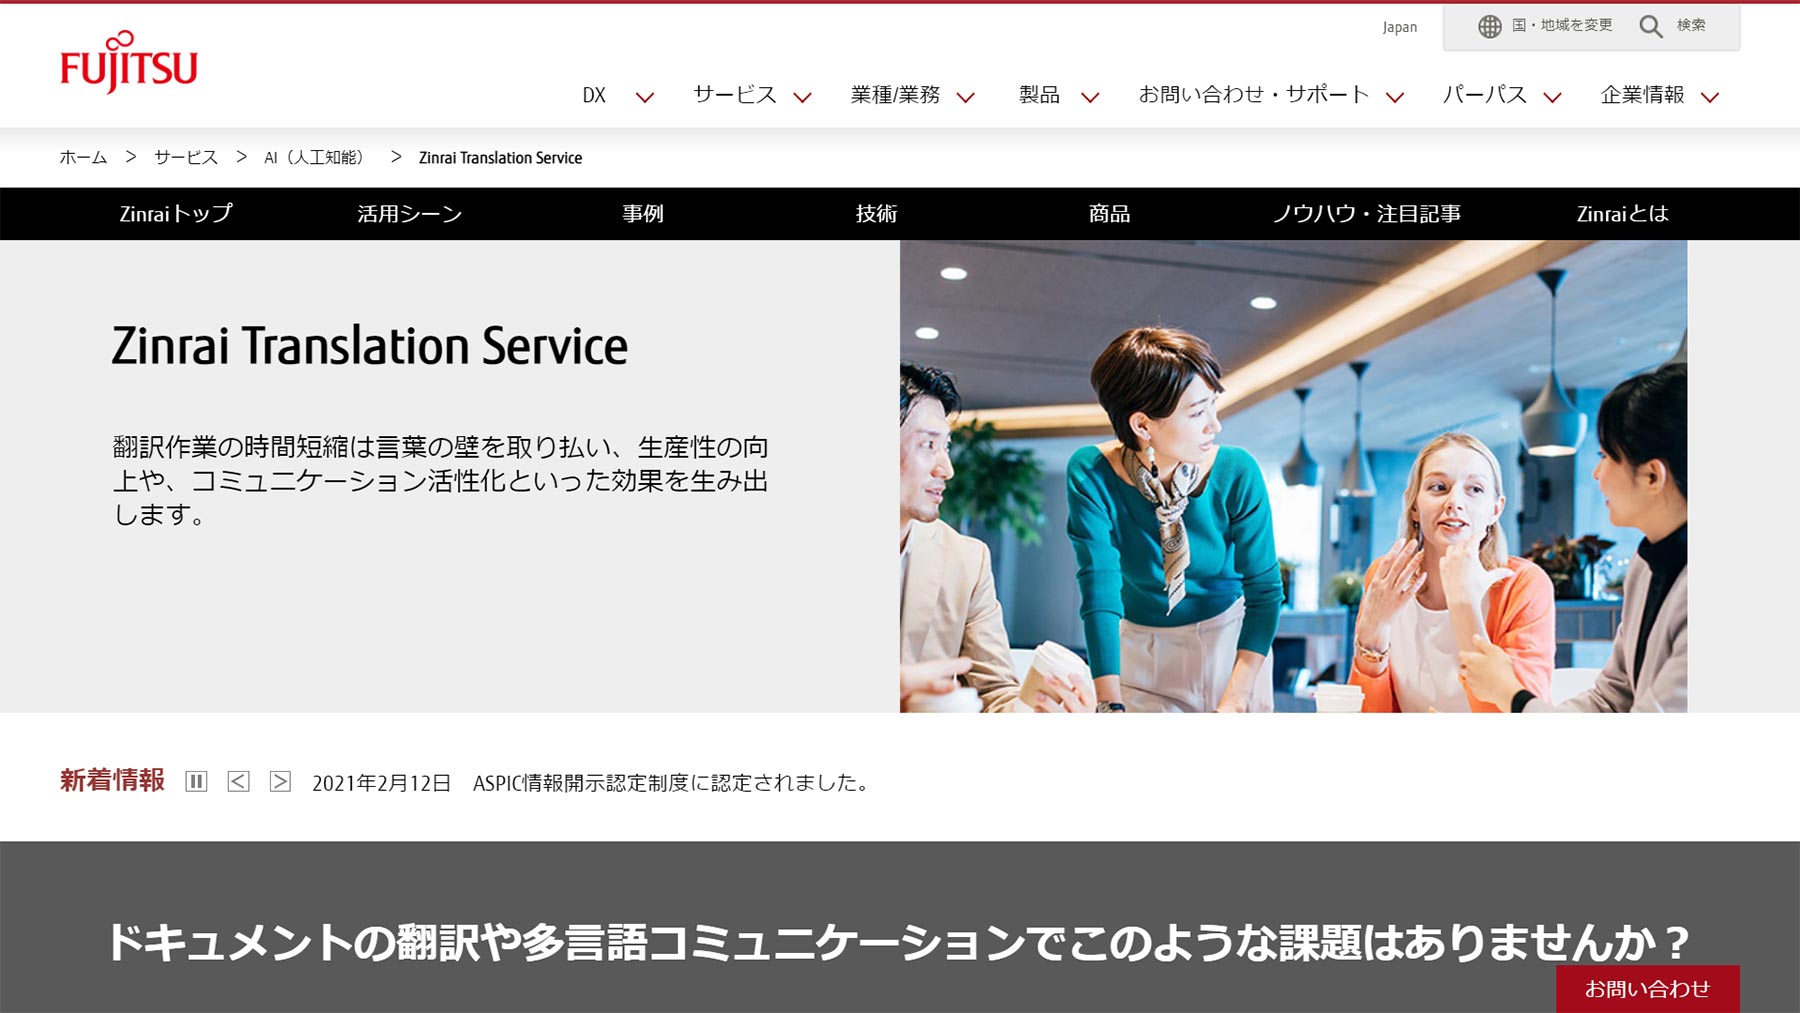 Zinrai Translation Service